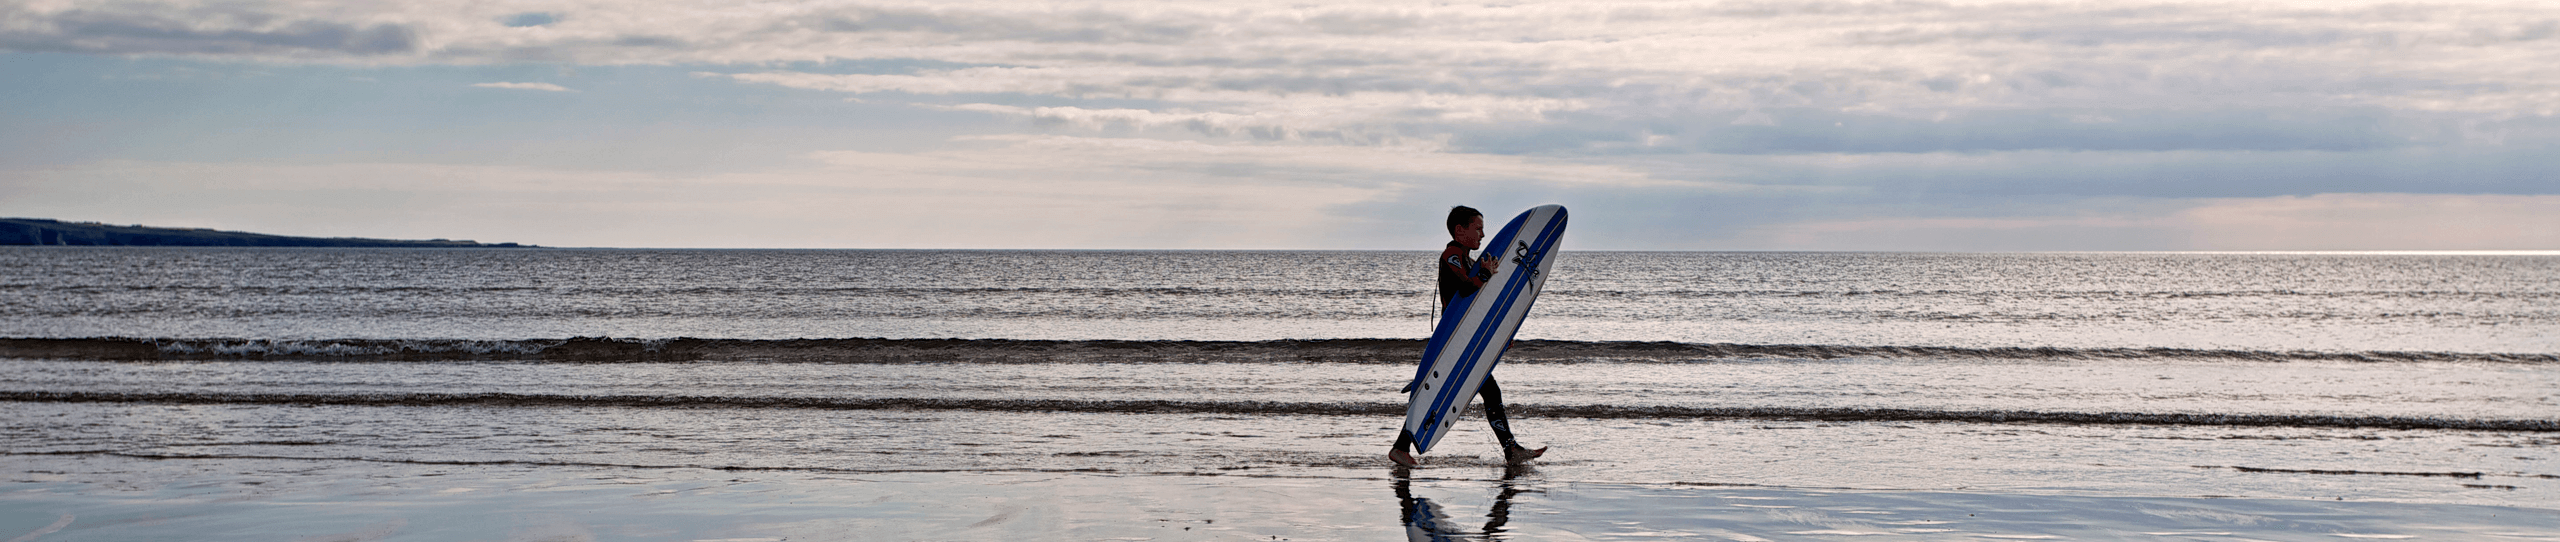 séjour-linguistique-anglais surf pour adultes